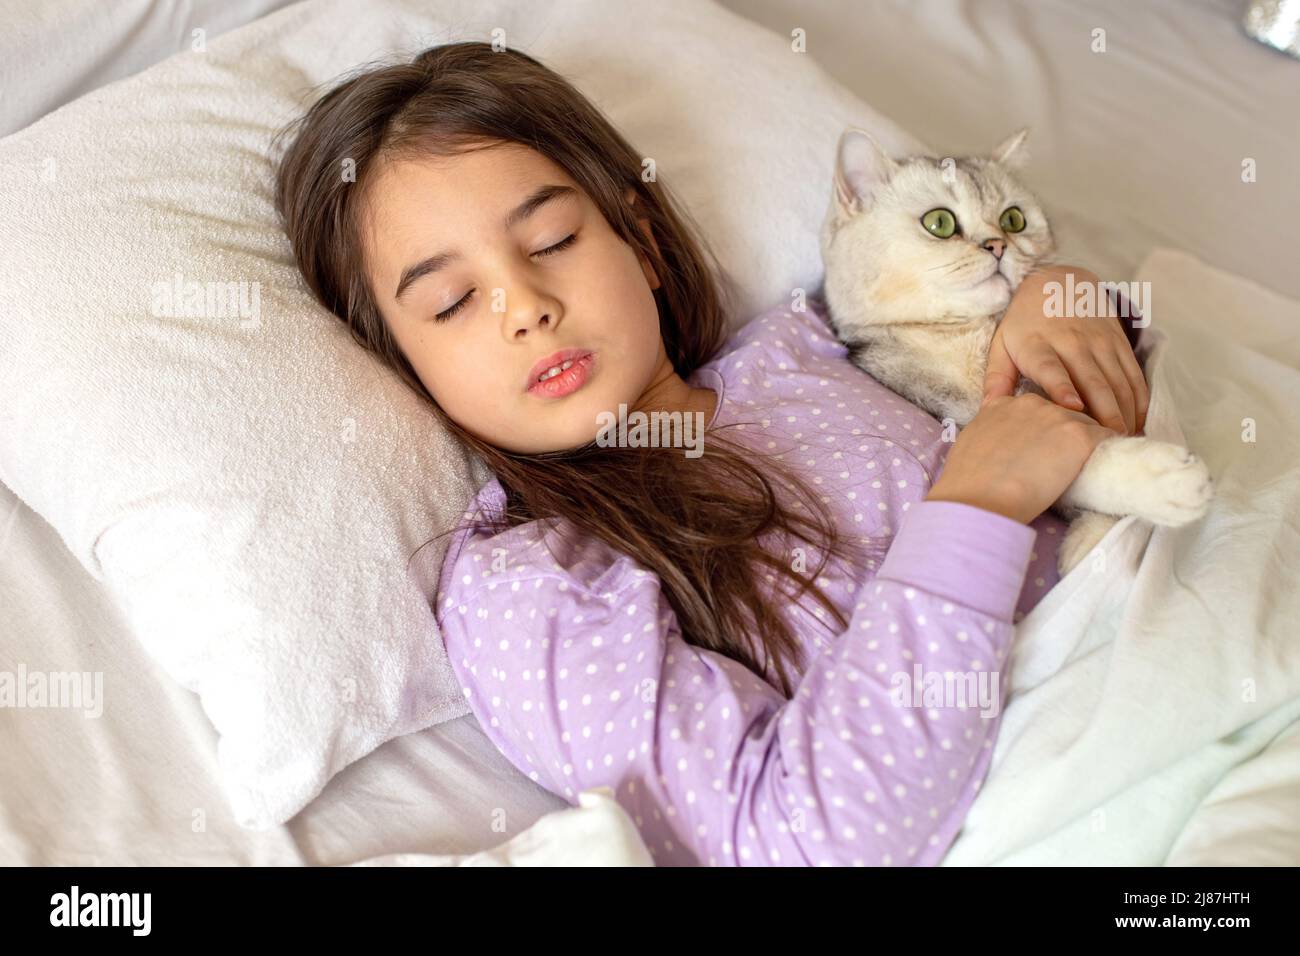 Una ragazza piccola affascinante in pigiama viola dorme abbracciando un gatto bianco affascinante adagiato su un cuscino bianco sul letto. Foto Stock